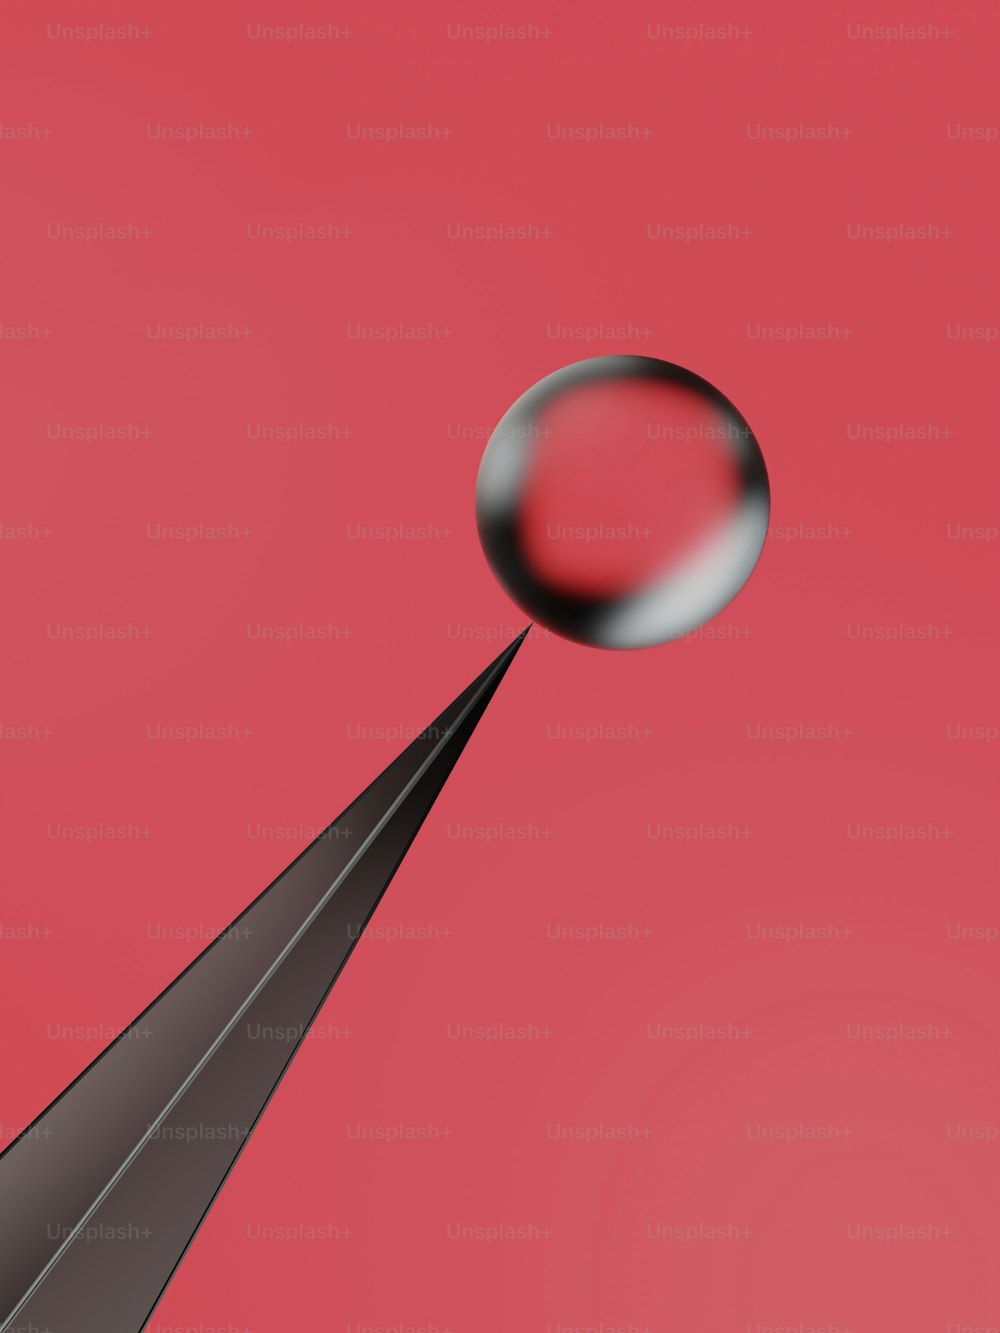 Una imagen borrosa de un objeto volando por el aire